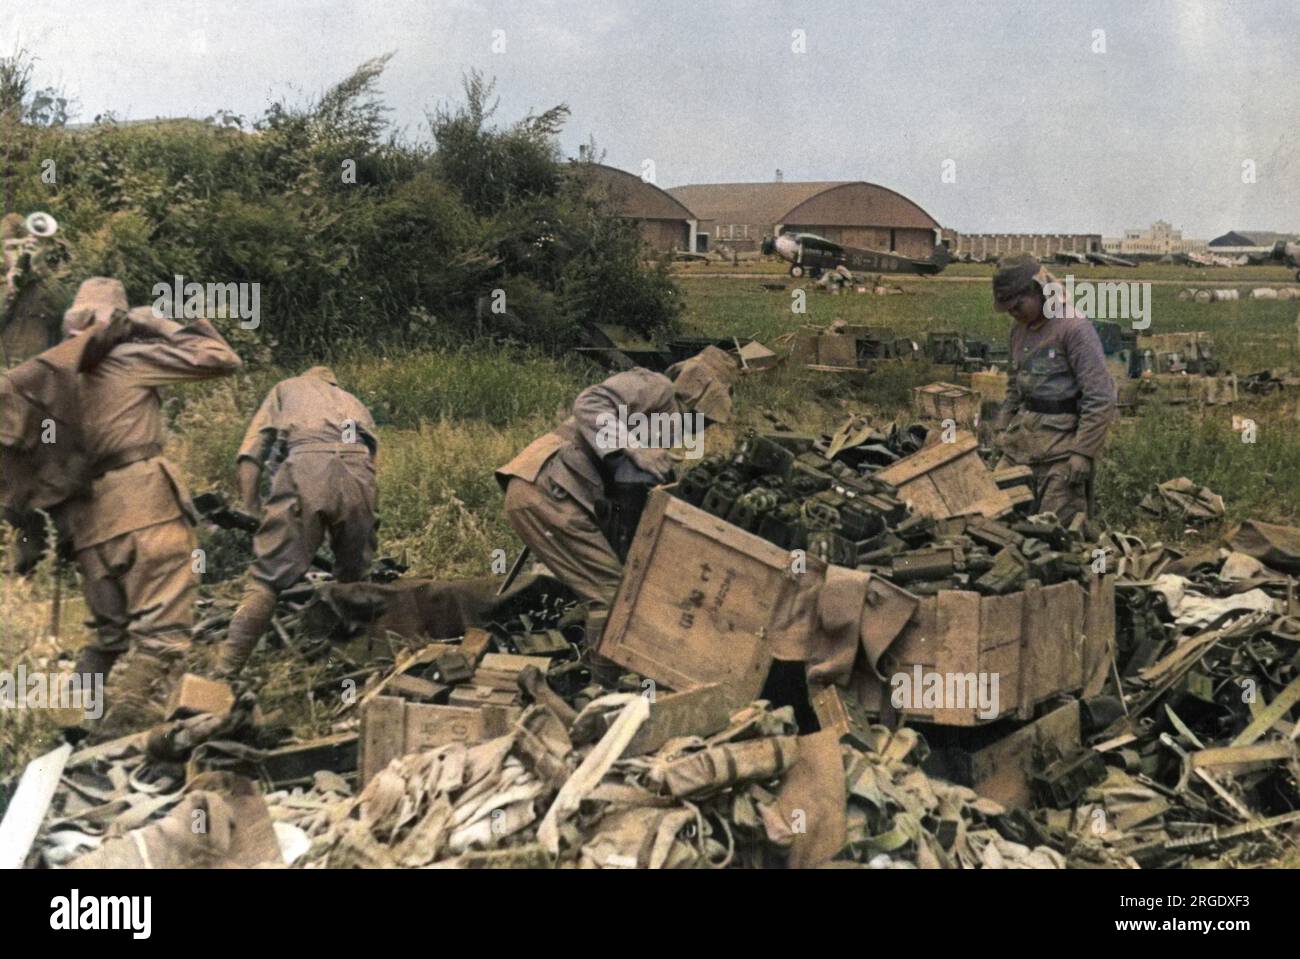 Eine Szene auf dem Flugplatz Mukden während der japanischen Kapitulation gegenüber den sowjetischen Truppen nach ihrer Invasion der Mandschurei im Norden Chinas. Japanische Truppen versammeln Waffen und Munition zur Kapitulation. Stockfoto